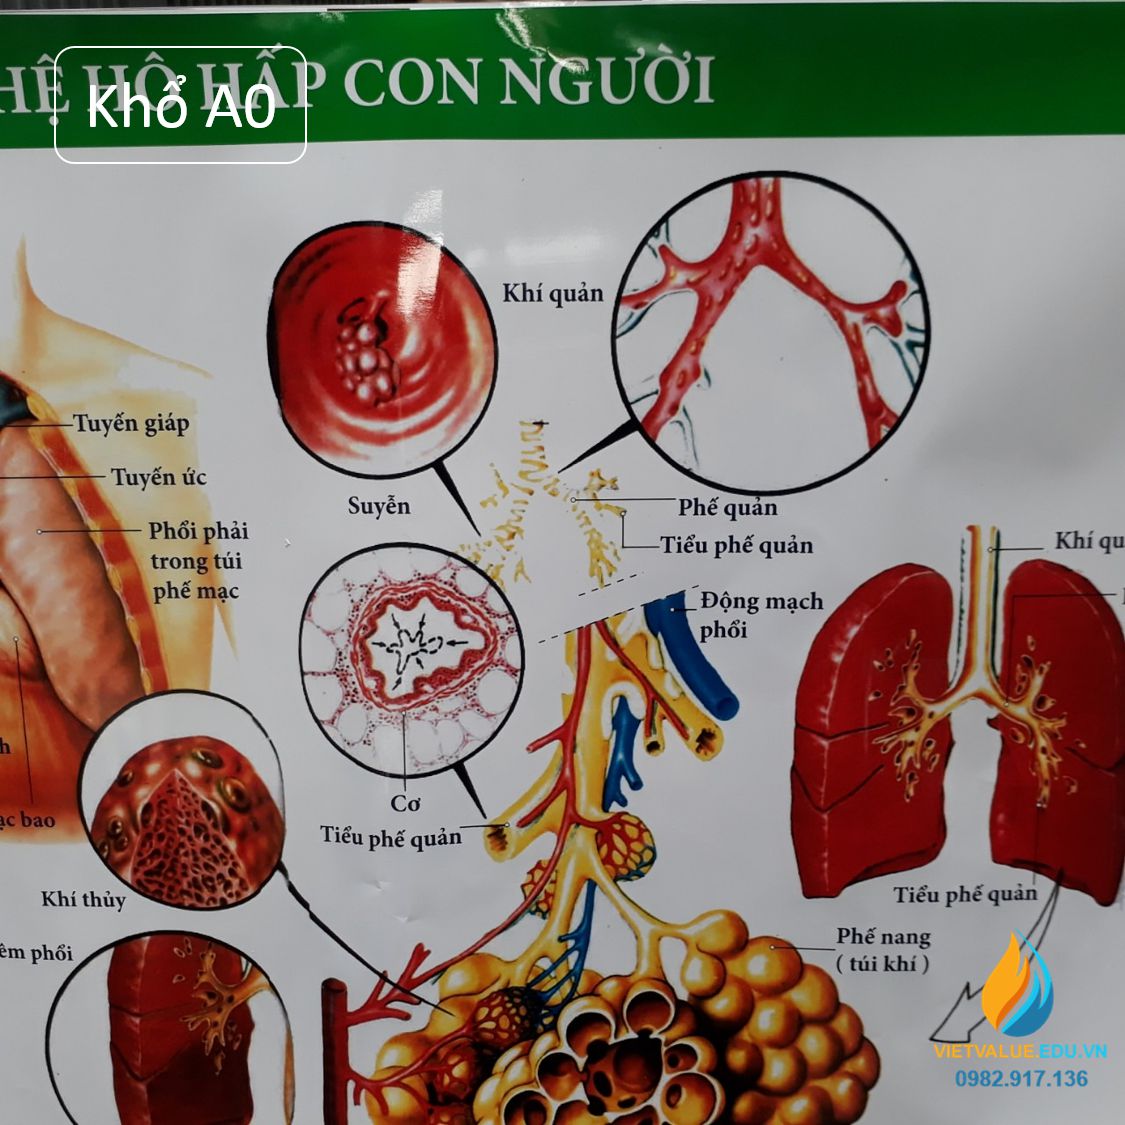 Poster cấu tạo hệ hô hấp con người, tranh ảnh sinh học giảng dạy cho học sinh quan sát